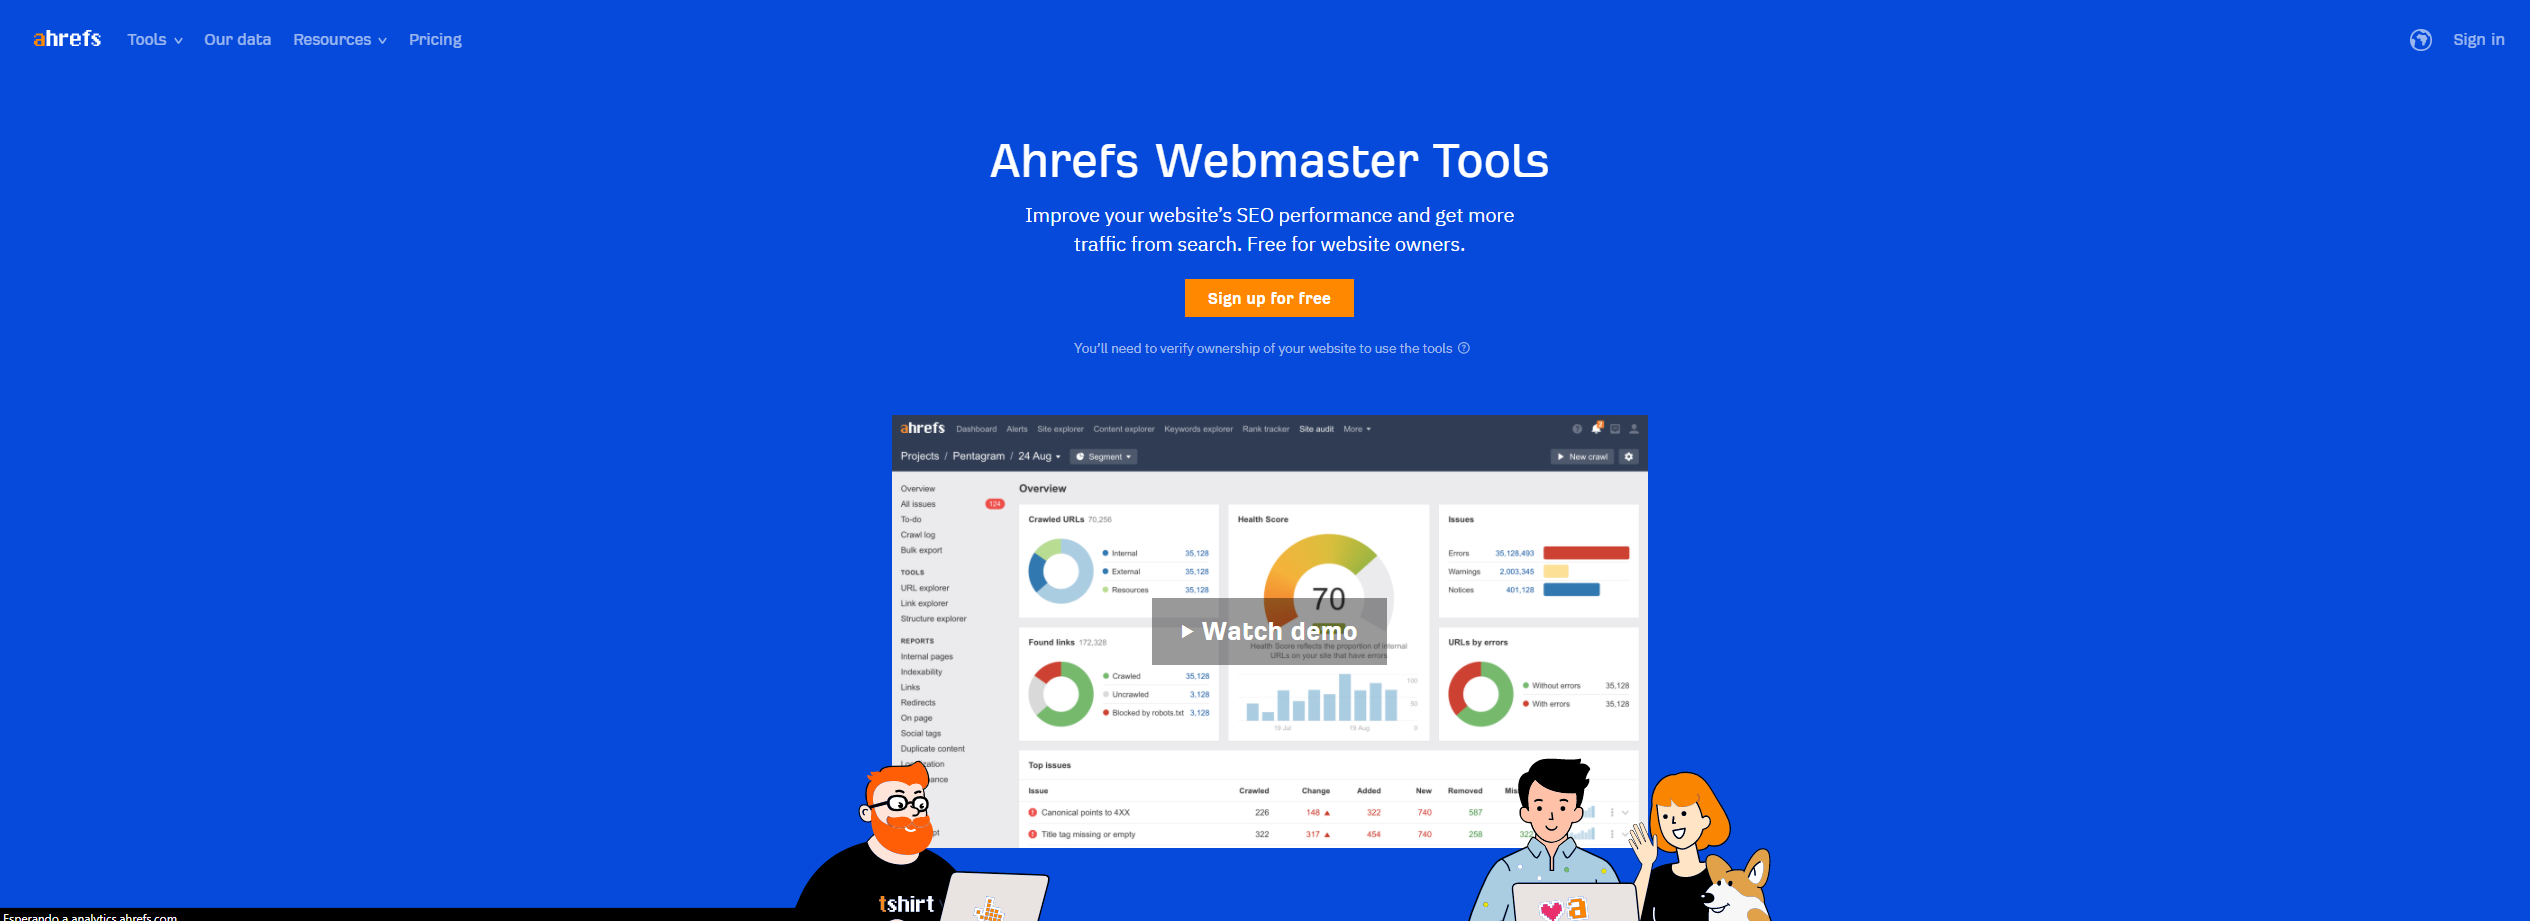 Ahrefs webmasters tools